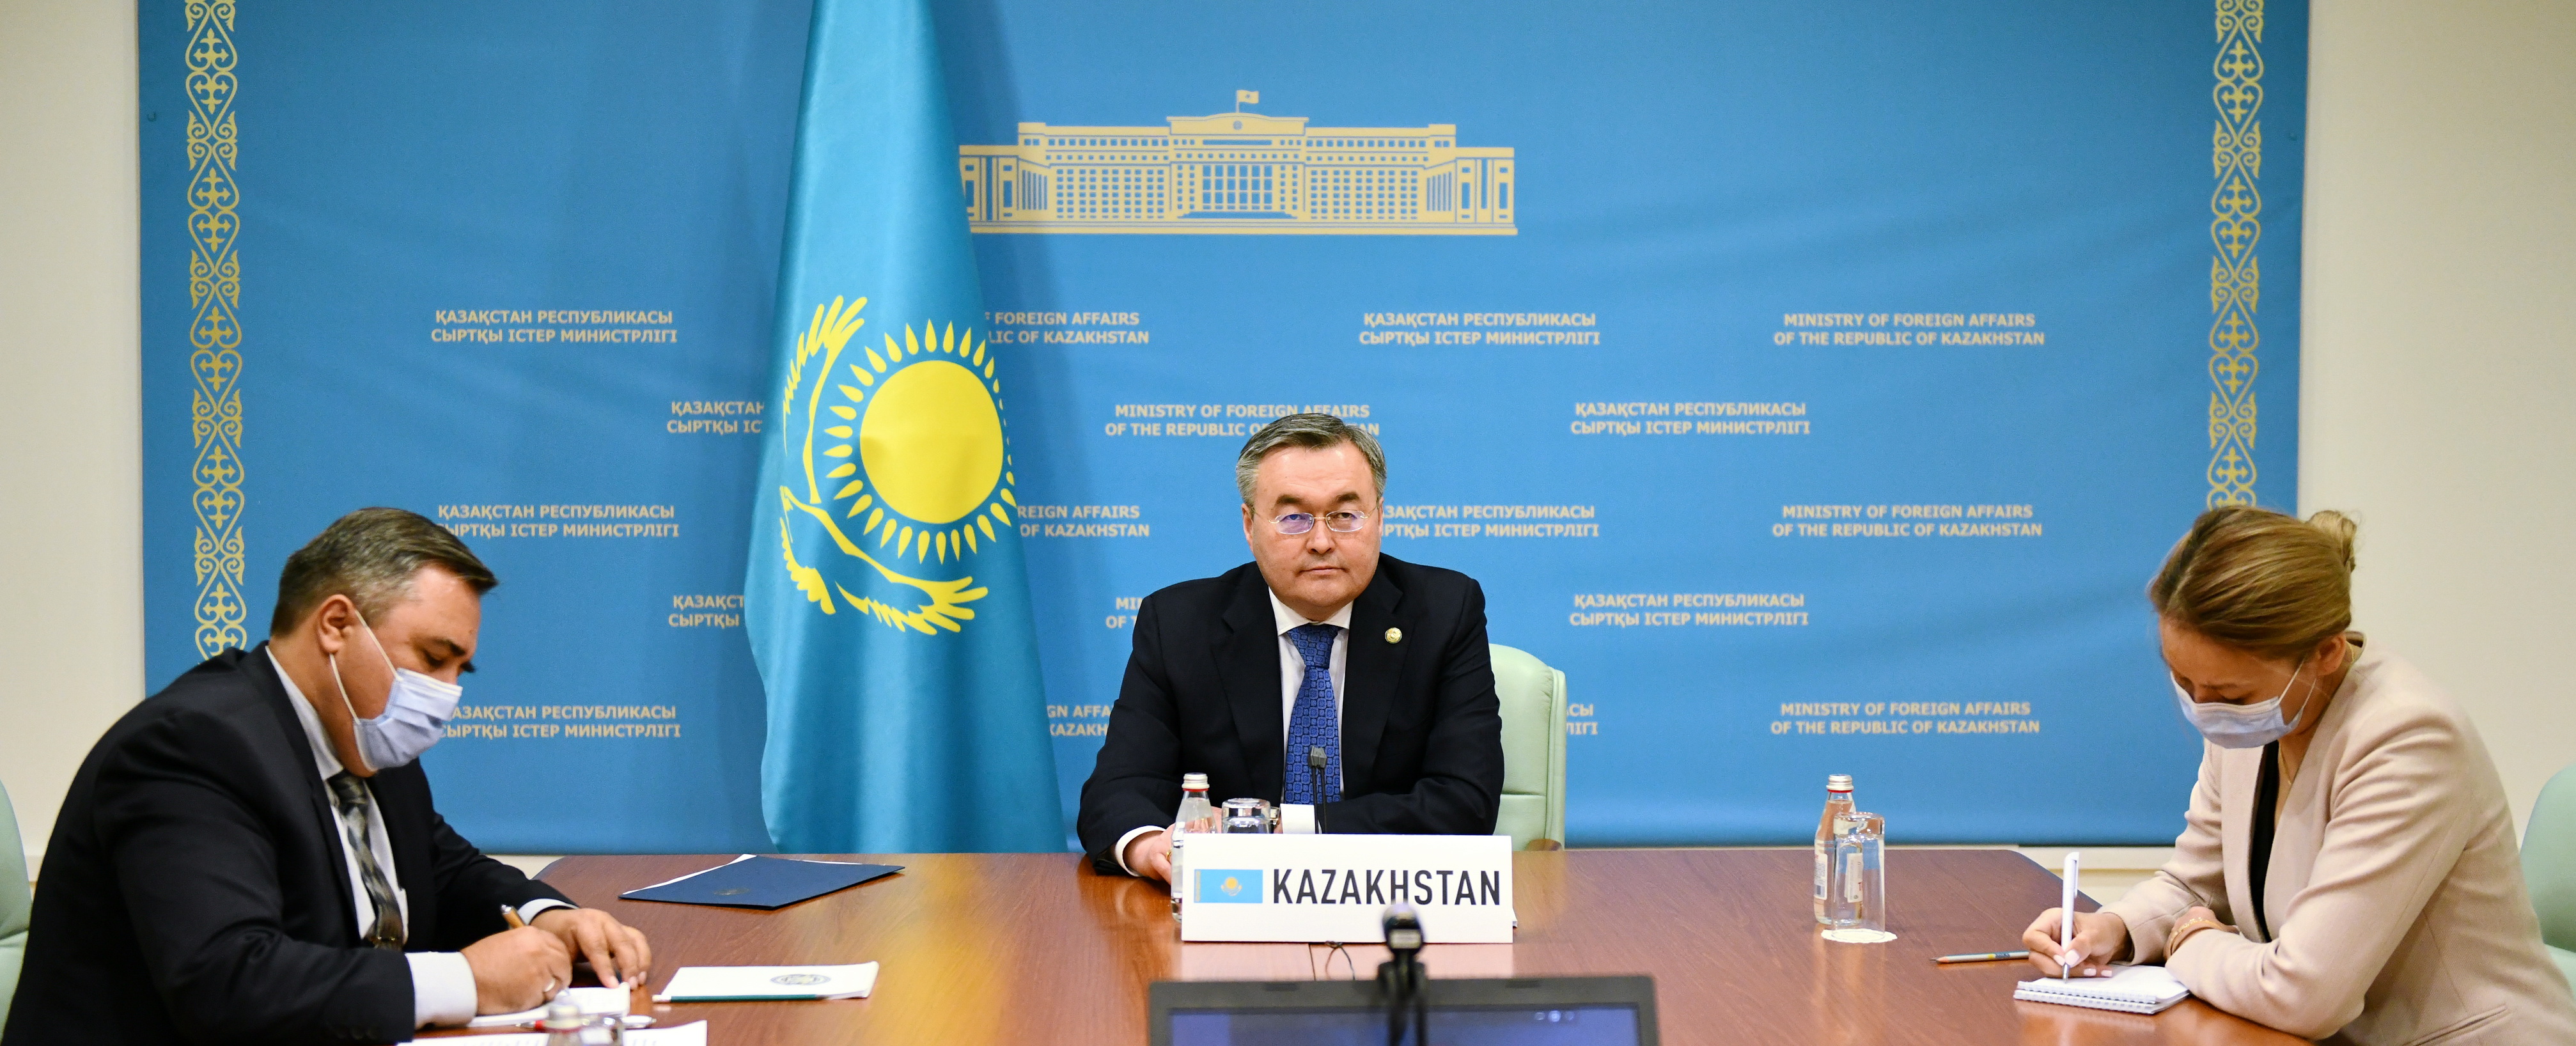 Представитель ООН высоко оценил деятельность Казахстана в противодействии терроризму